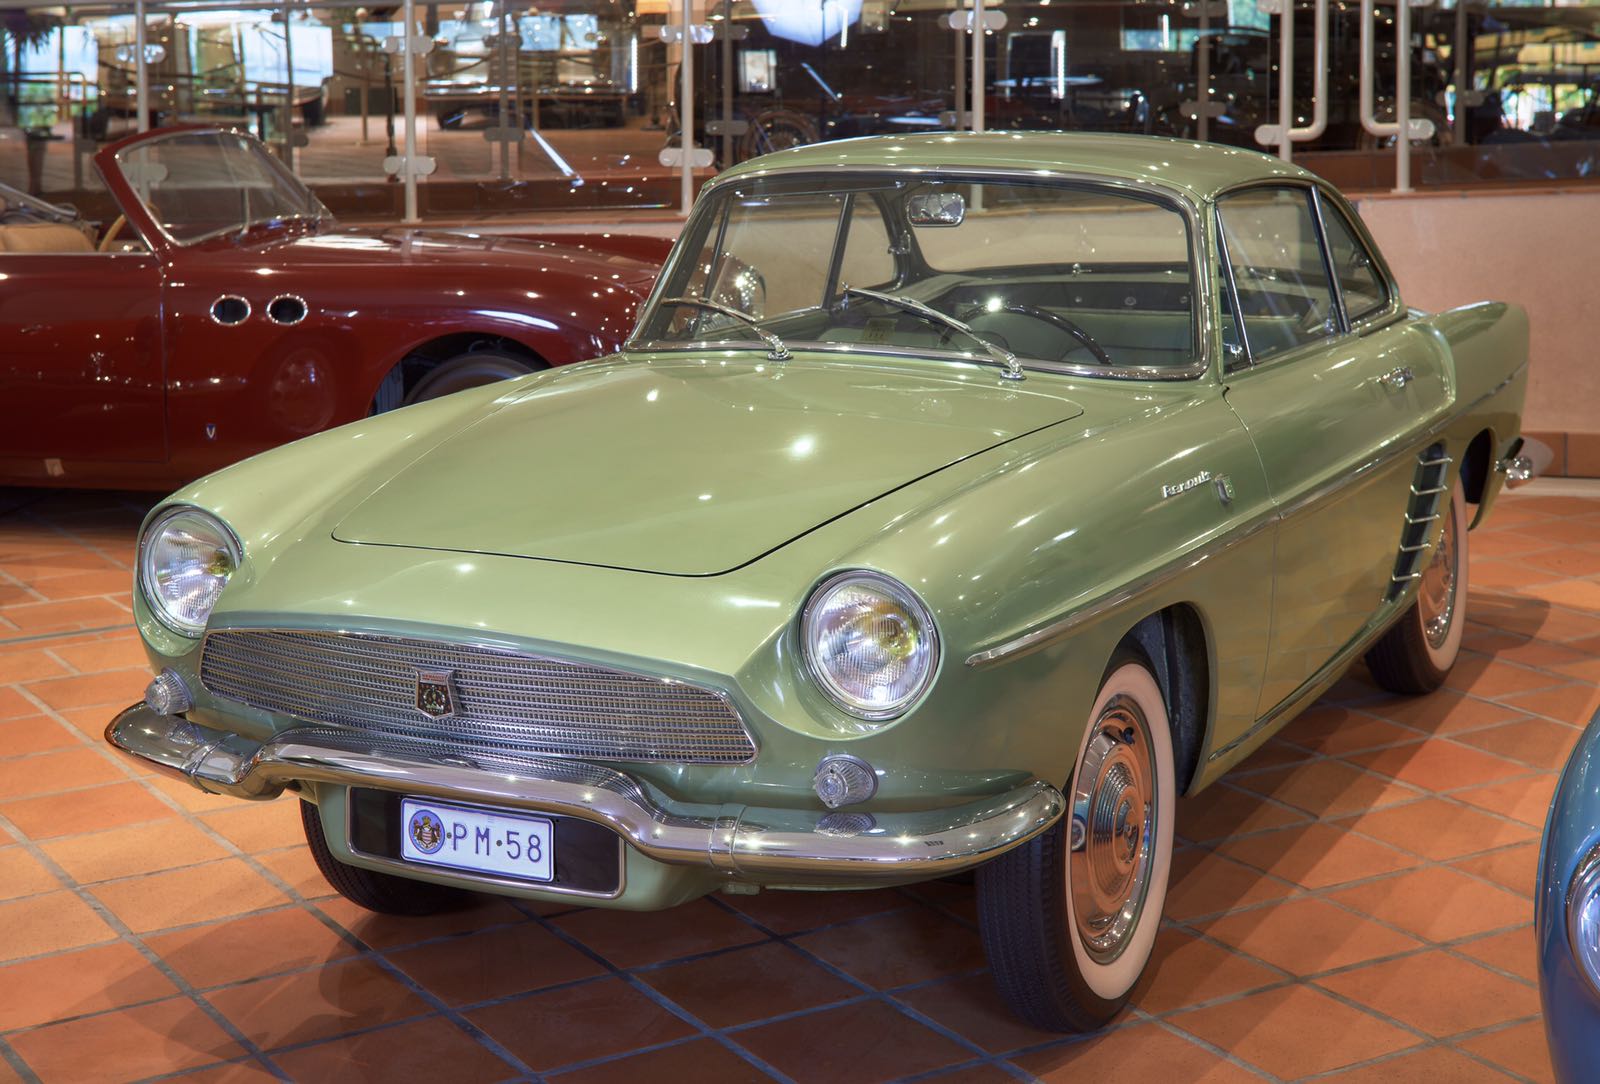 Коллекция автомобилей Его Светлости князя Монако — историческое наследие семьи Гримальди для будущих поколений